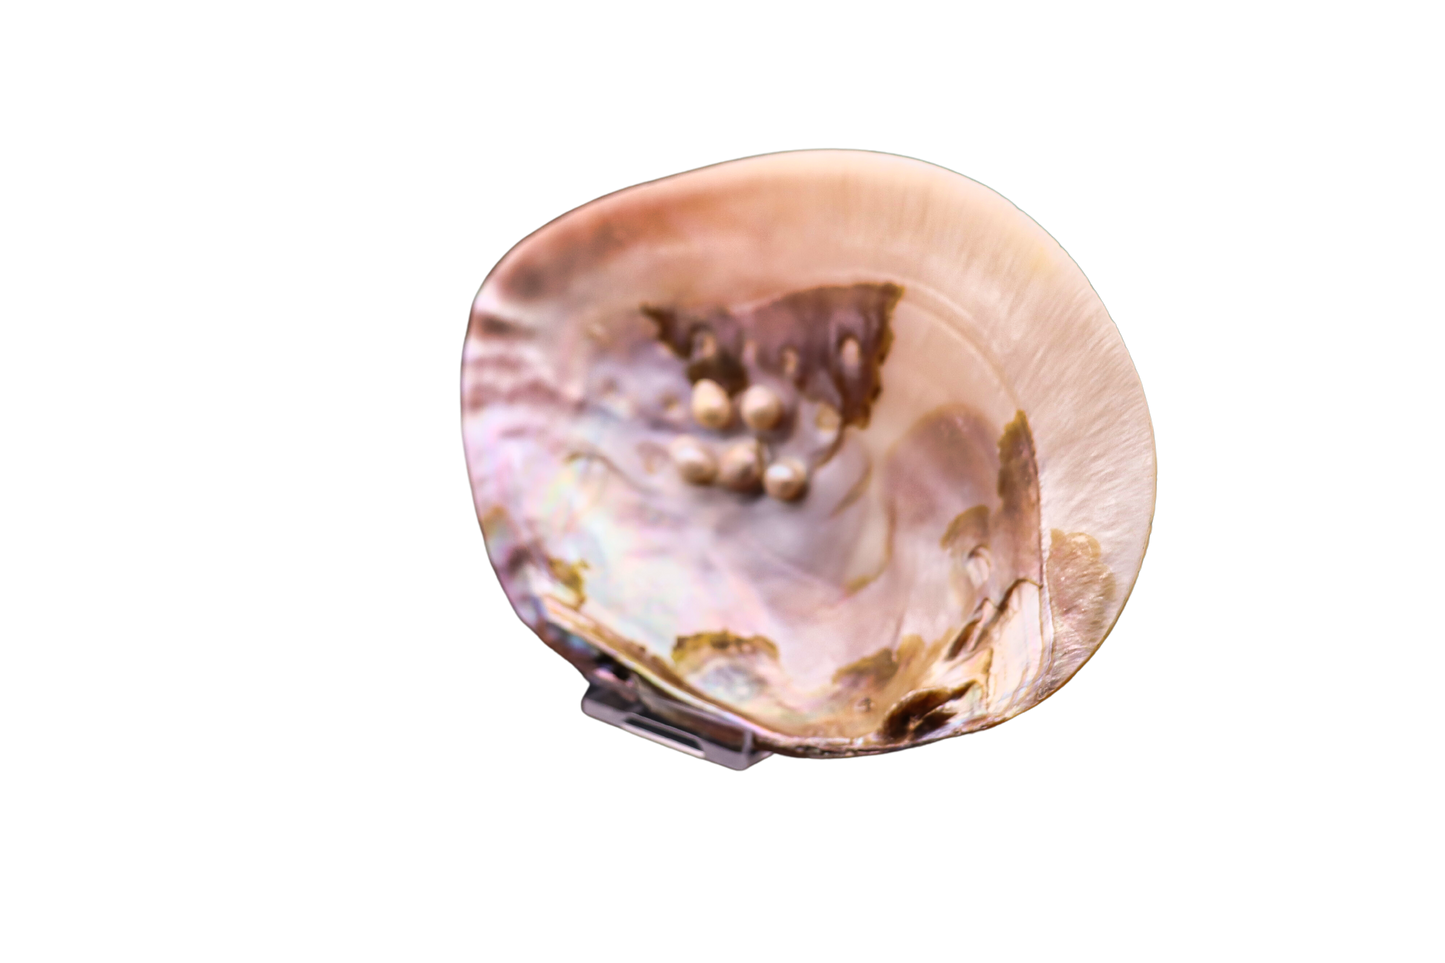 Muschel mit Perlen: Ein verborgener Schatz aus der Tiefe der Natur